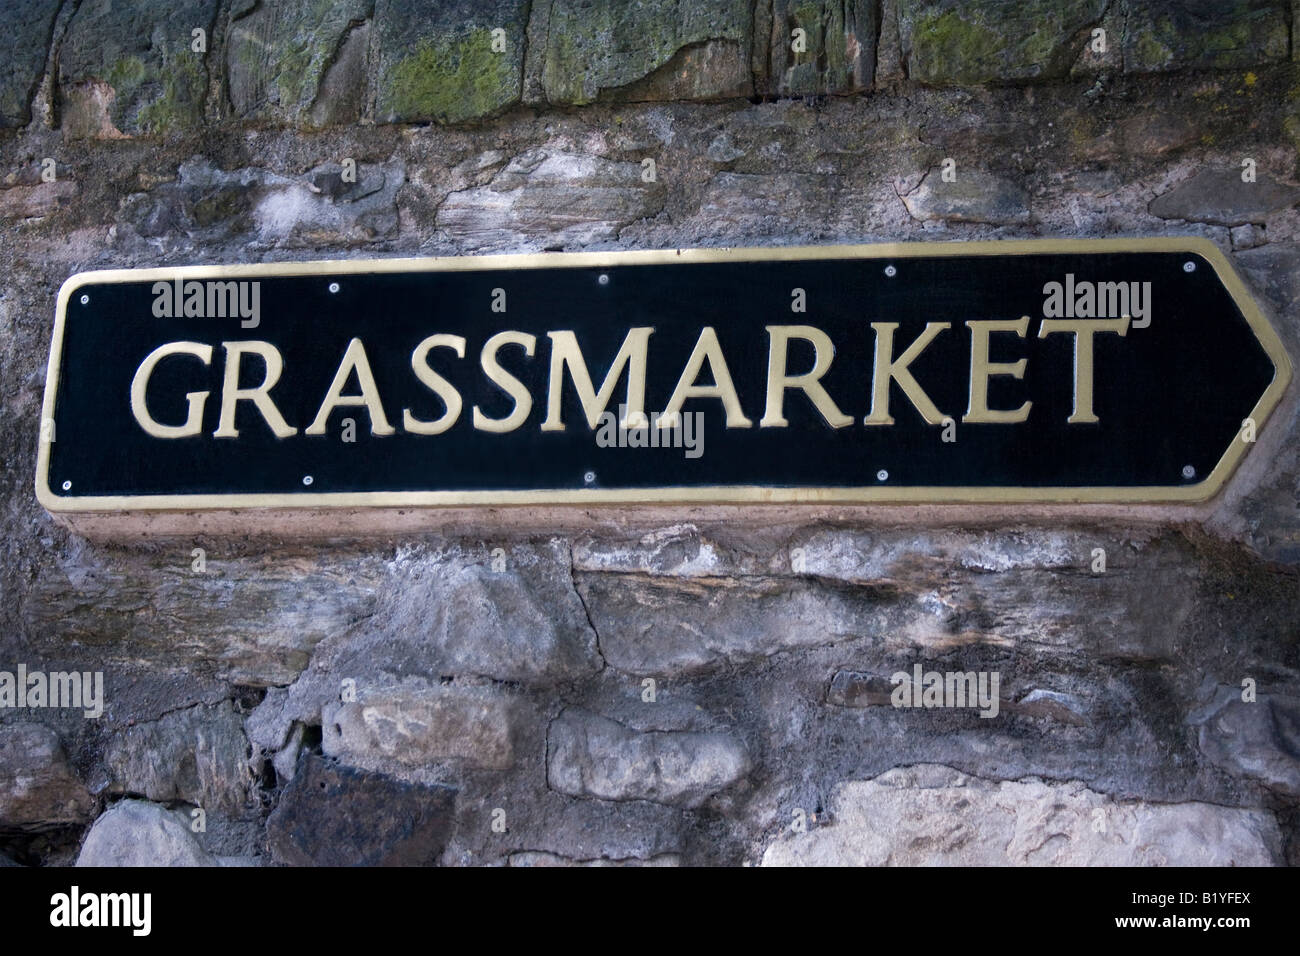 Grassmarket - street sign in Edinburgh, Scotland, UK Banque D'Images